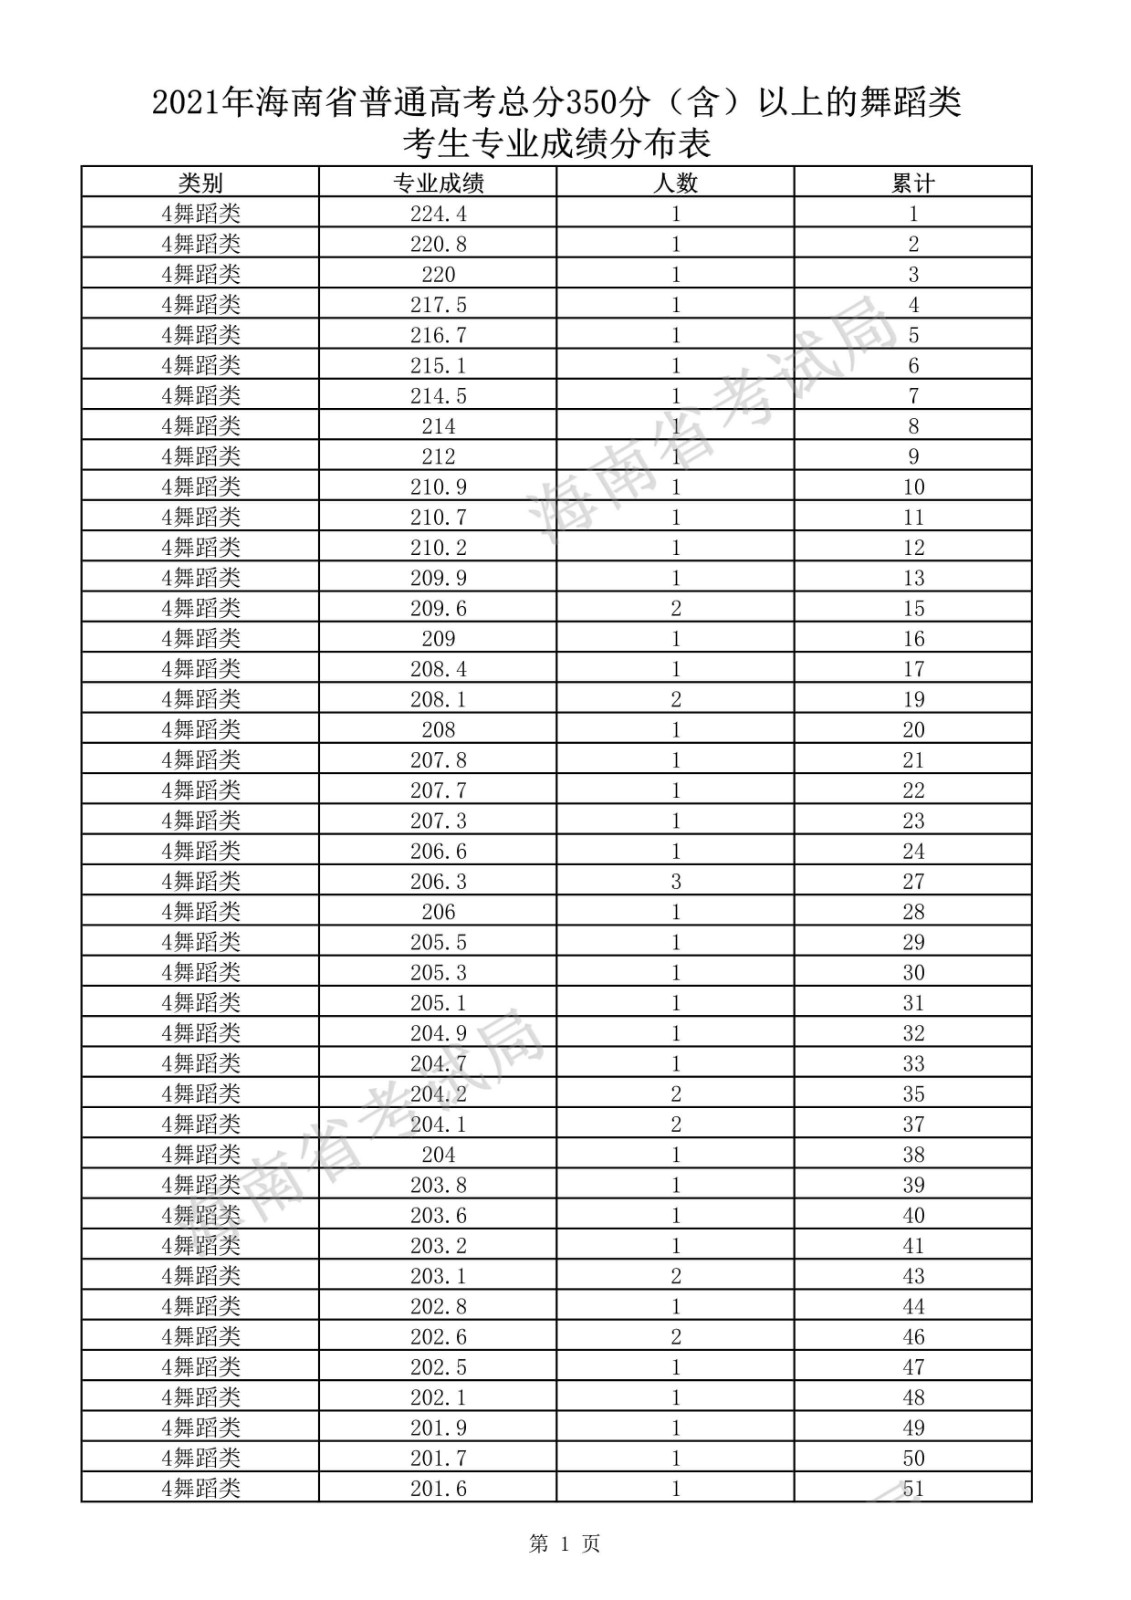 2021年海南省普通高考总分350分（含）以上的舞蹈类考生专业成绩分布表